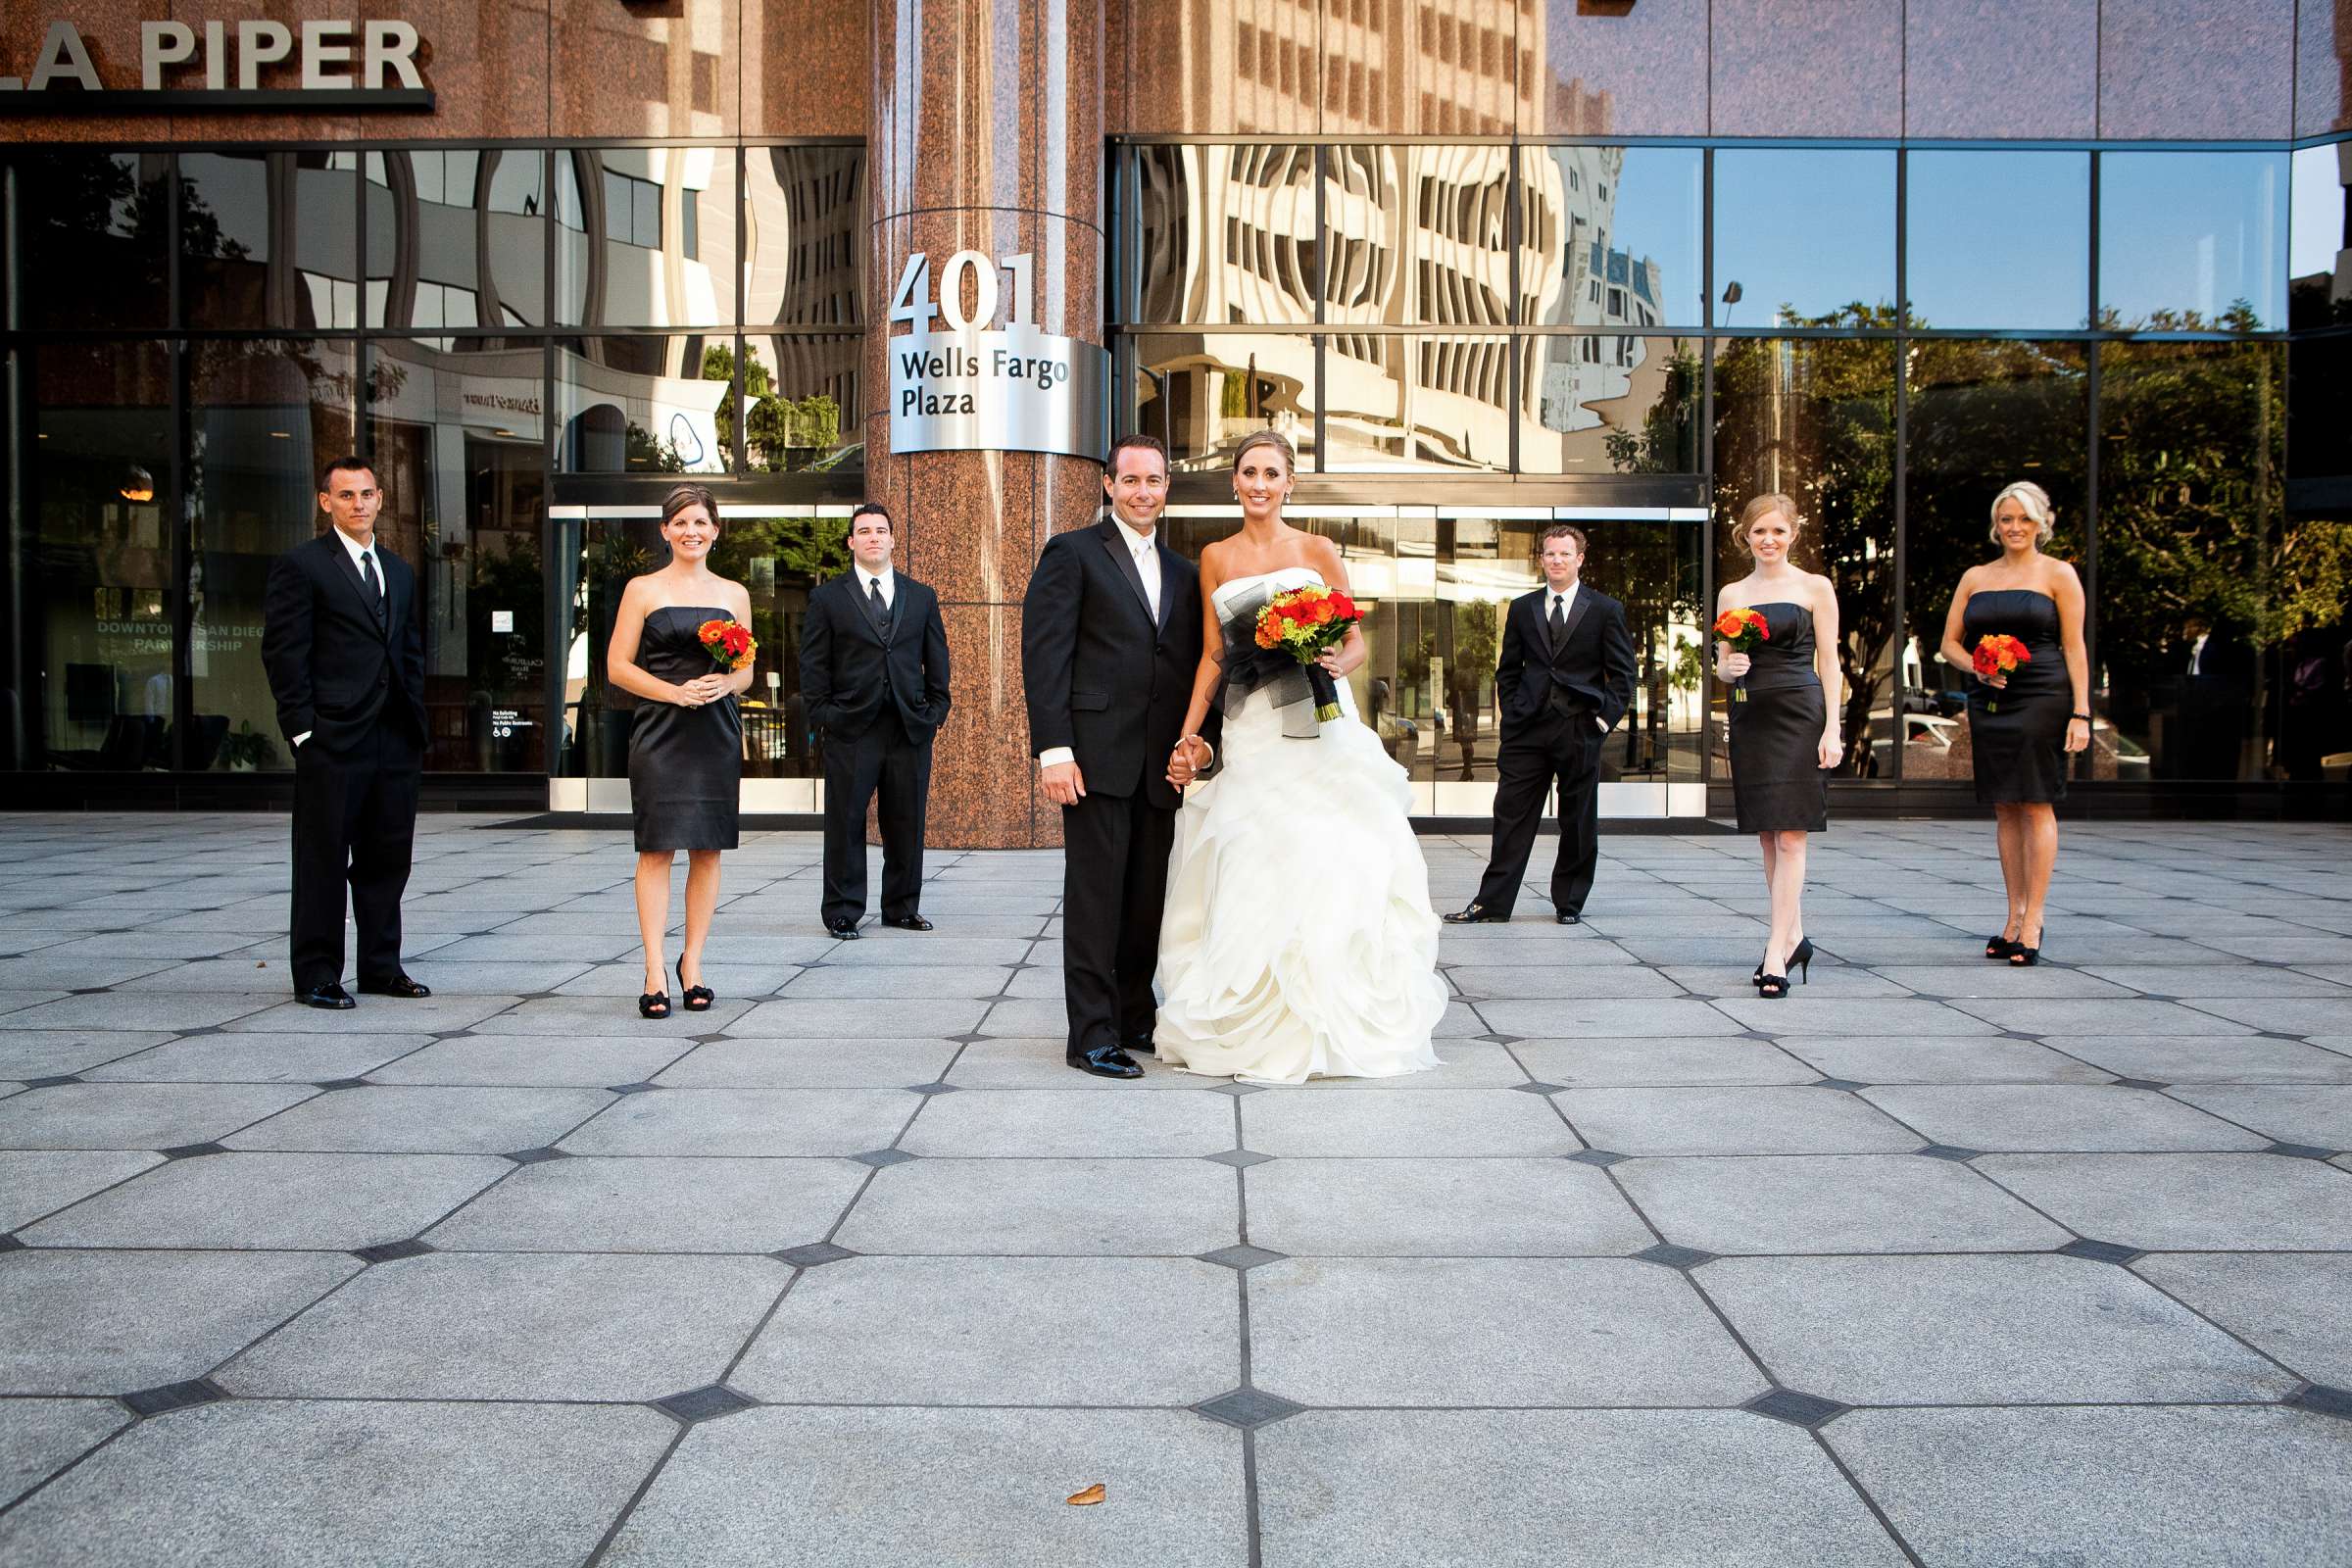 Hotel Palomar San Diego Wedding, Liz and Jeff Wedding Photo #205380 by True Photography